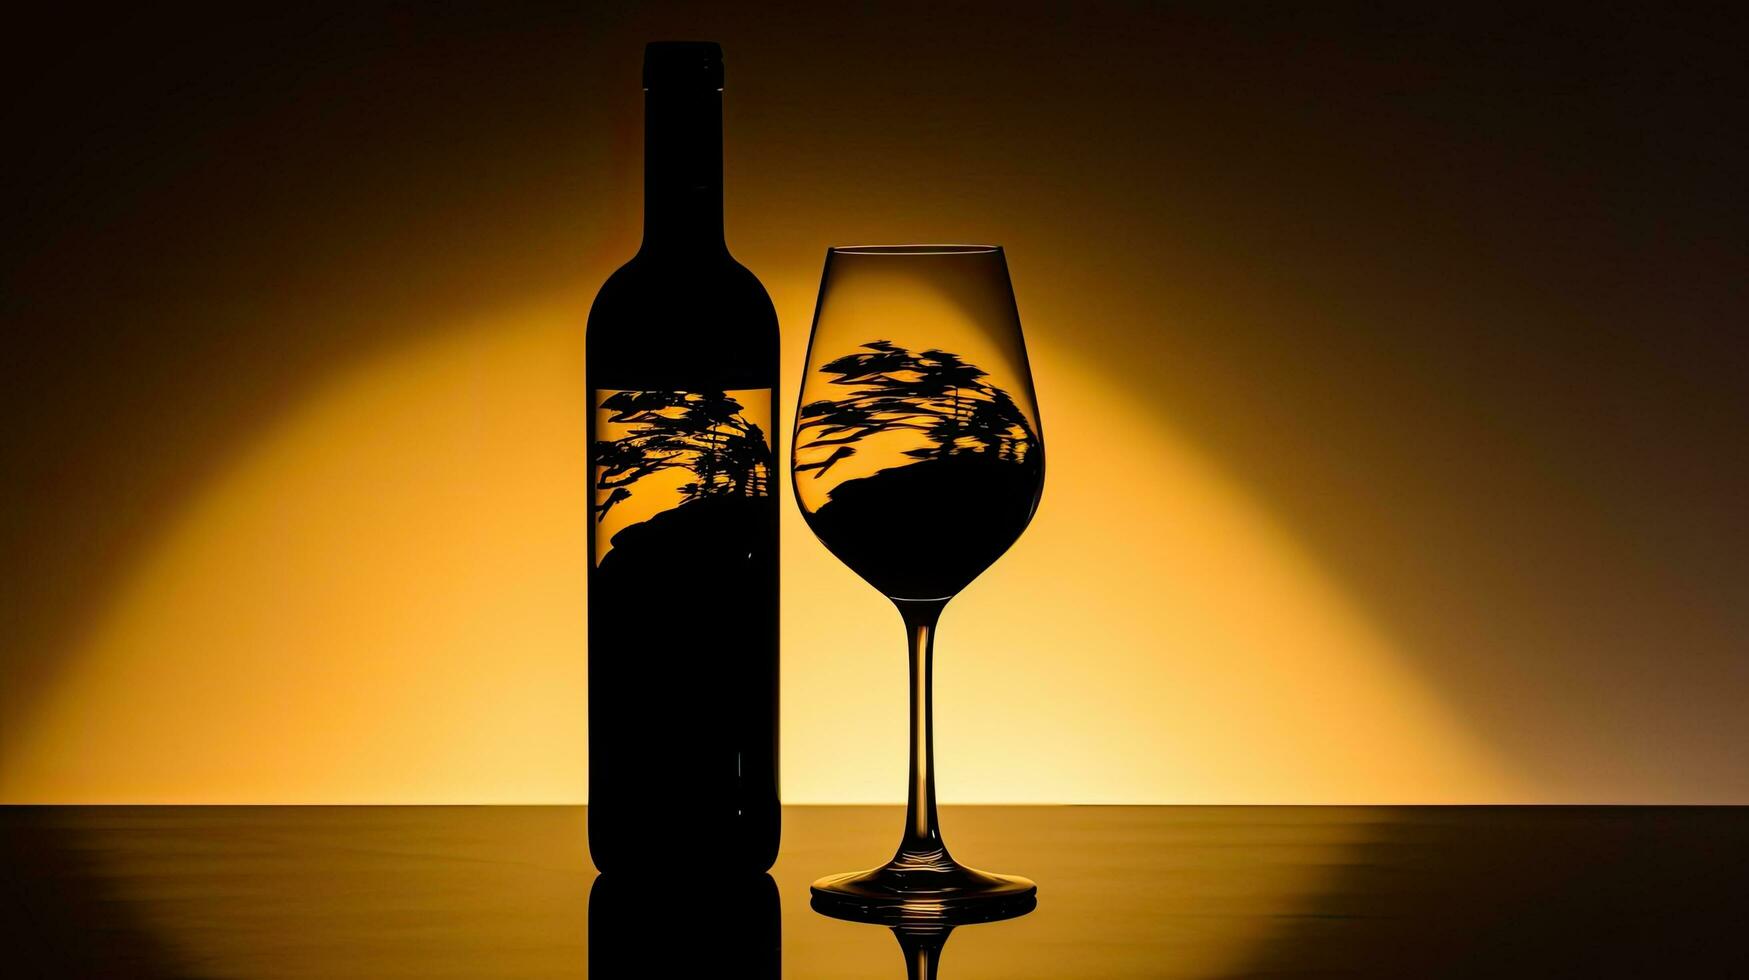 studio schot van een wijn glas en een alcohol fles in silhouet foto